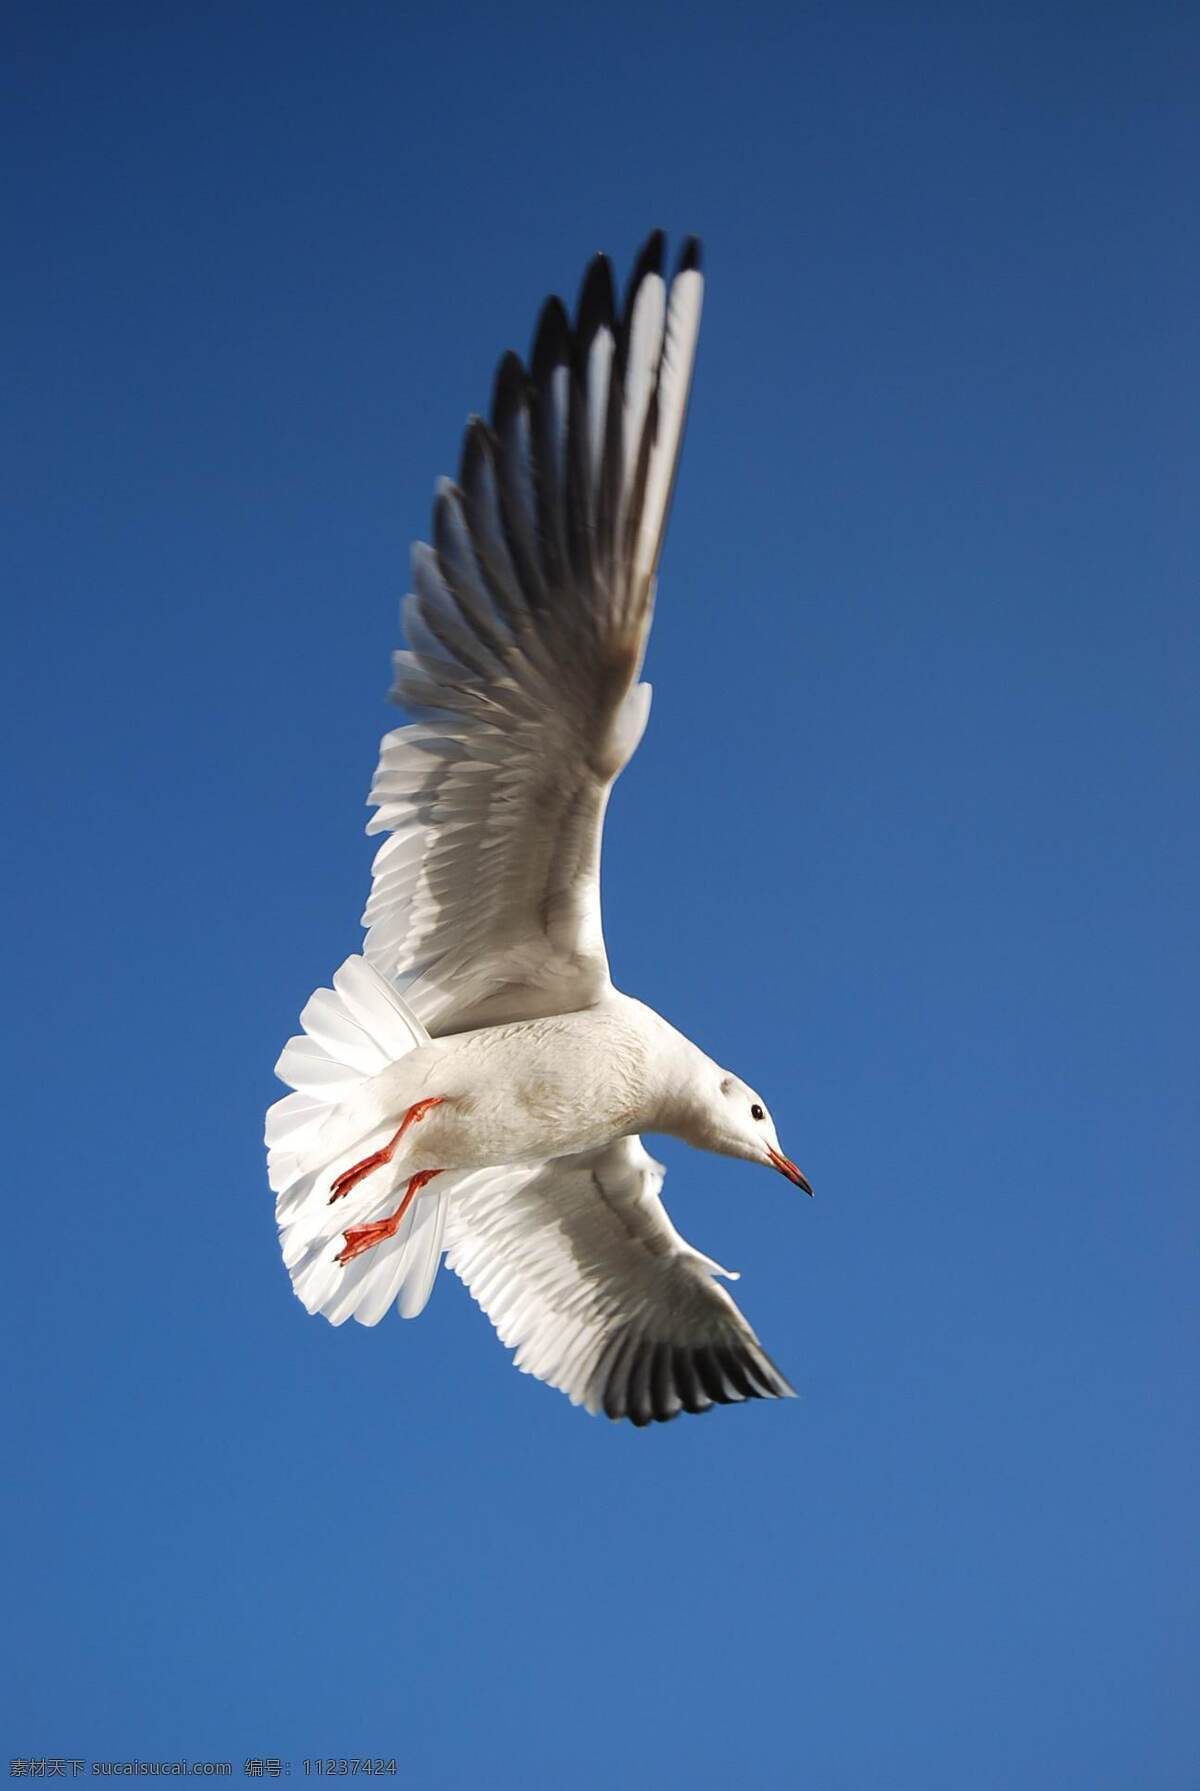 海鸥图片 海鸥 红嘴鸥 动物摄影 空中动物 鸟类图片 禽鸟摄影 飞鸟 海鸟 飞鸟图片 鸟类 生物世界